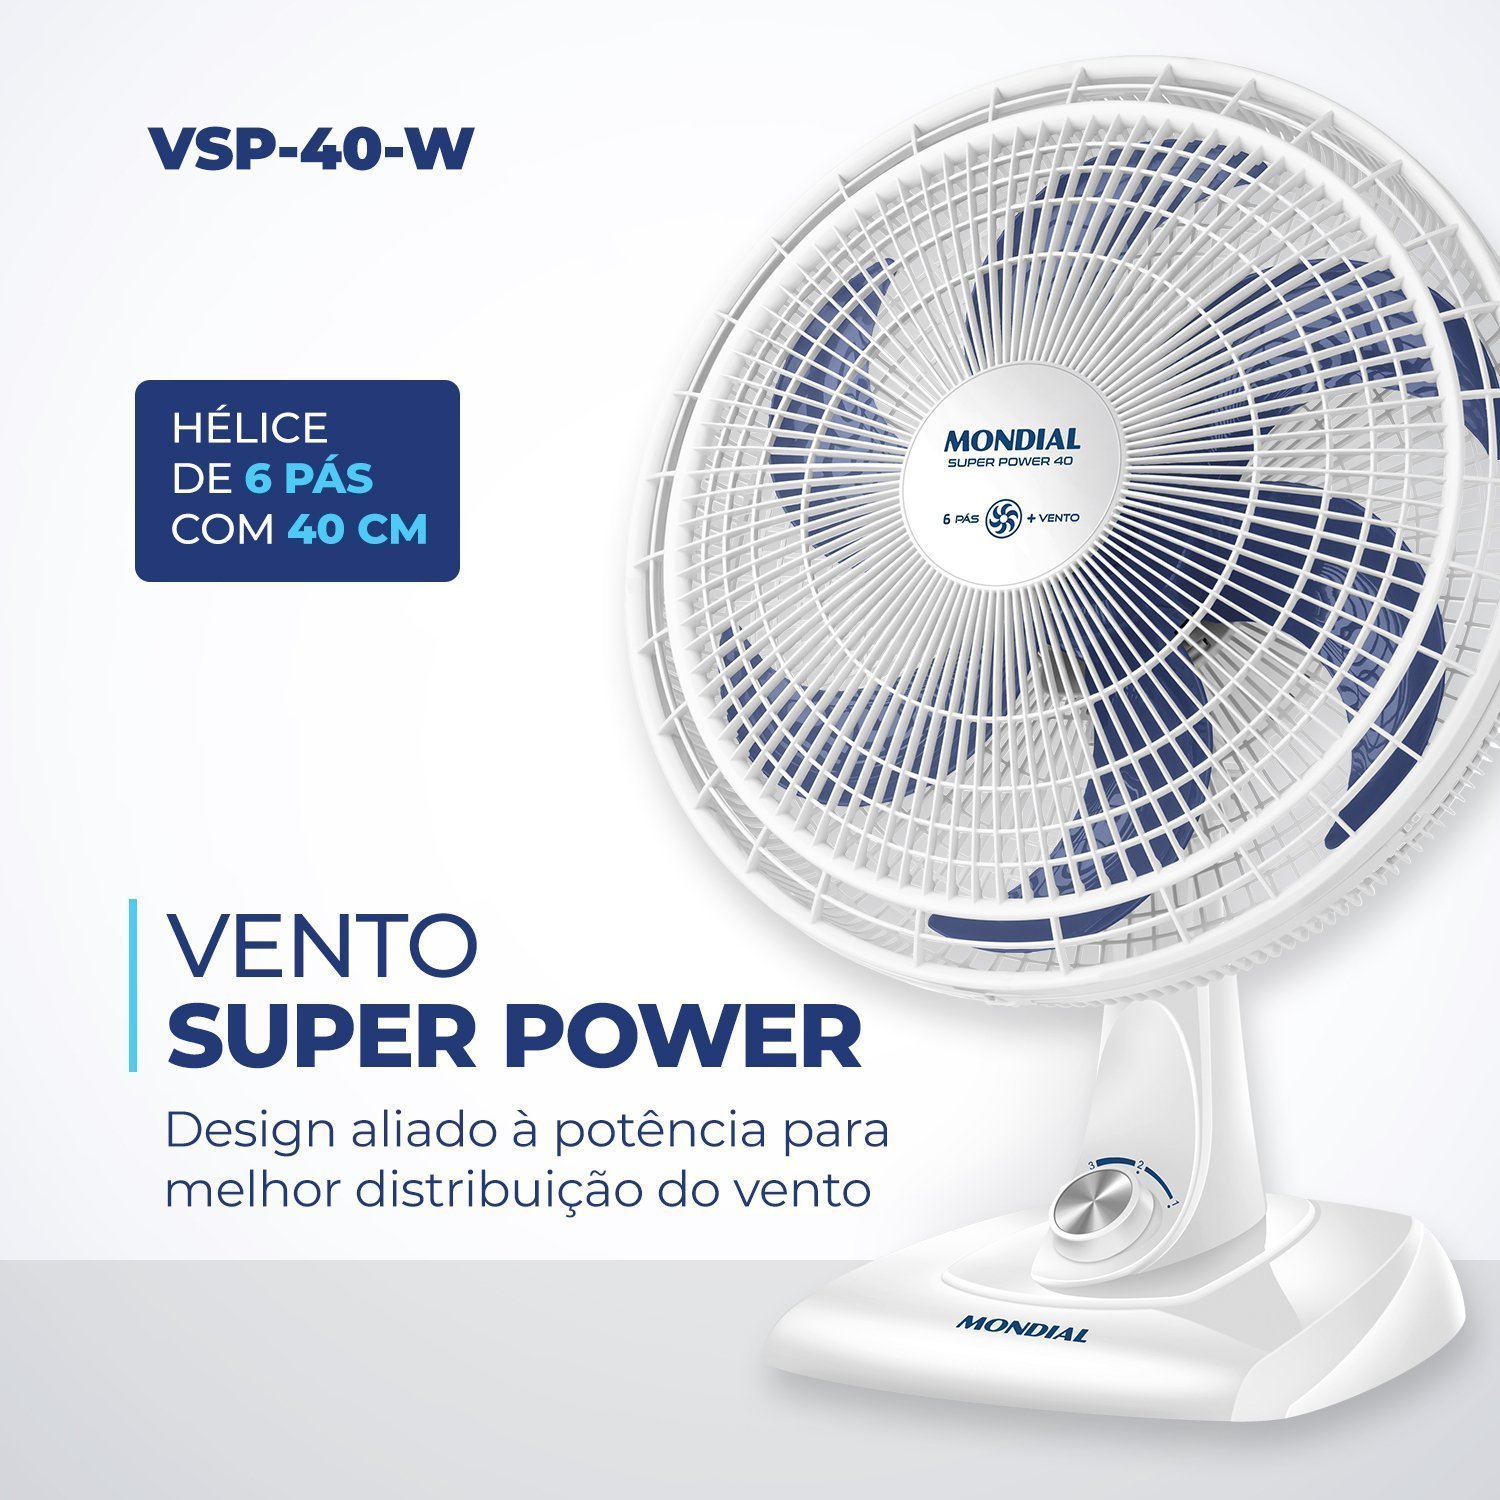 Ventilador de Mesa 40cm Super Power 140w 220v Vsp-40-w Mondial - 4